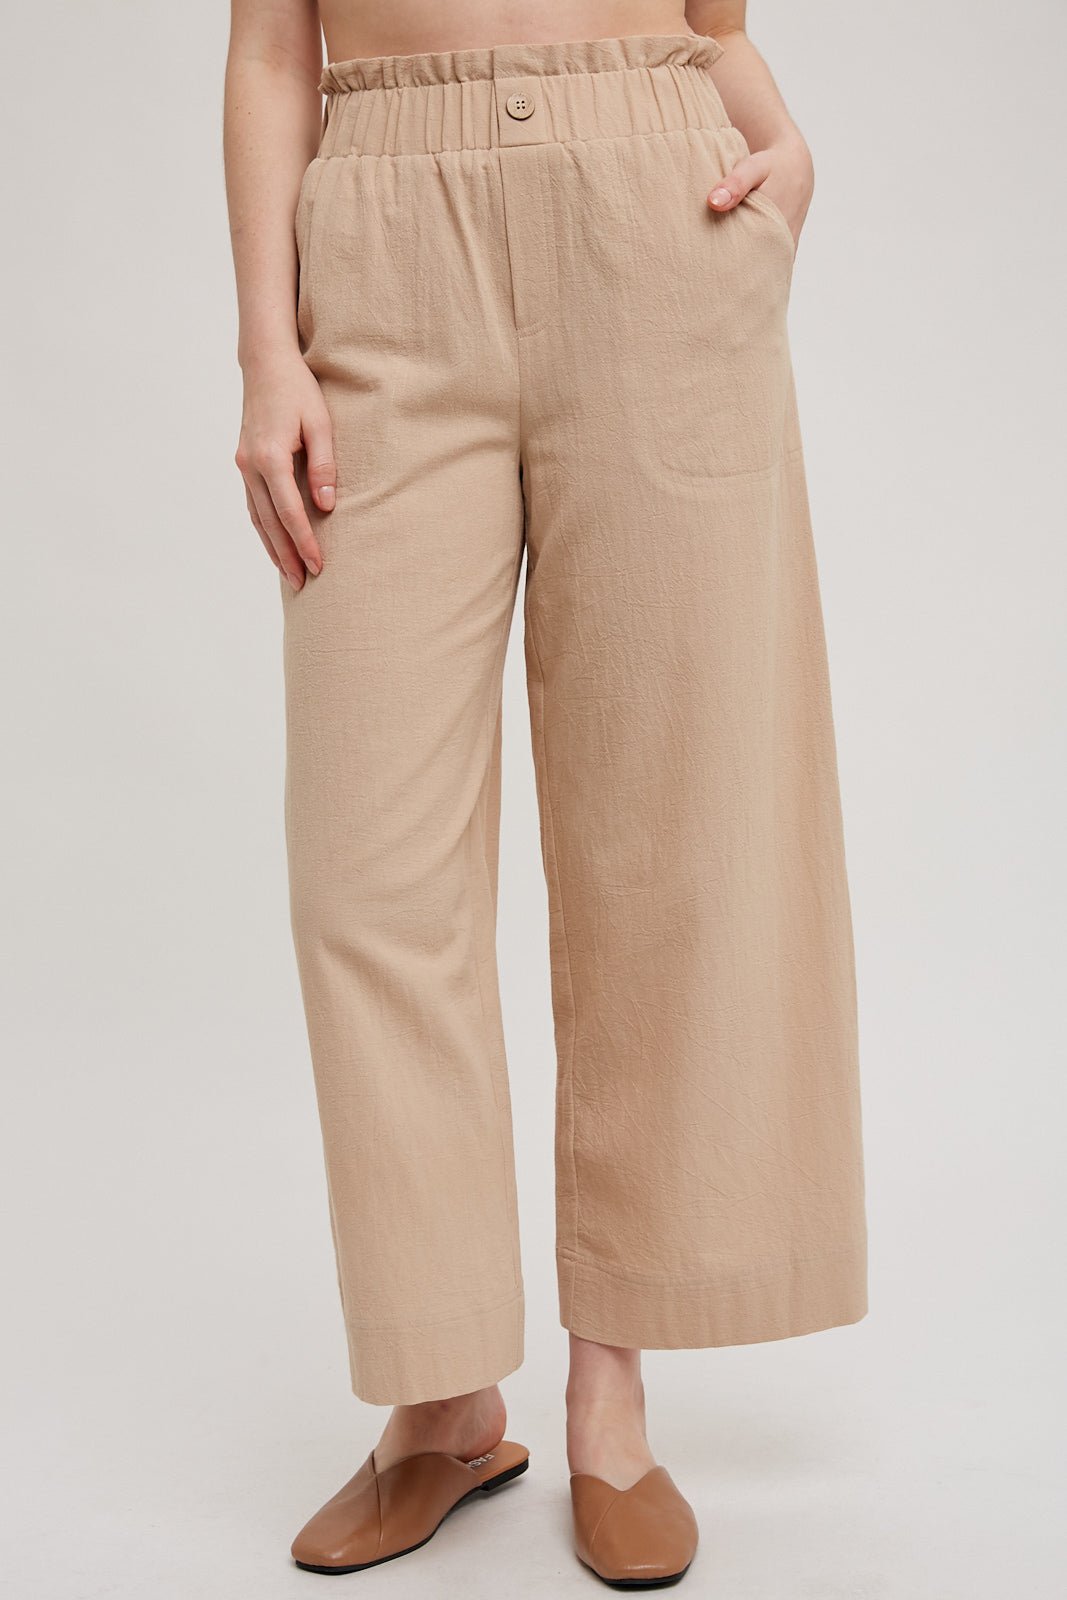 Elastic Waistband Pocket Pants - Modish Maven Boutique